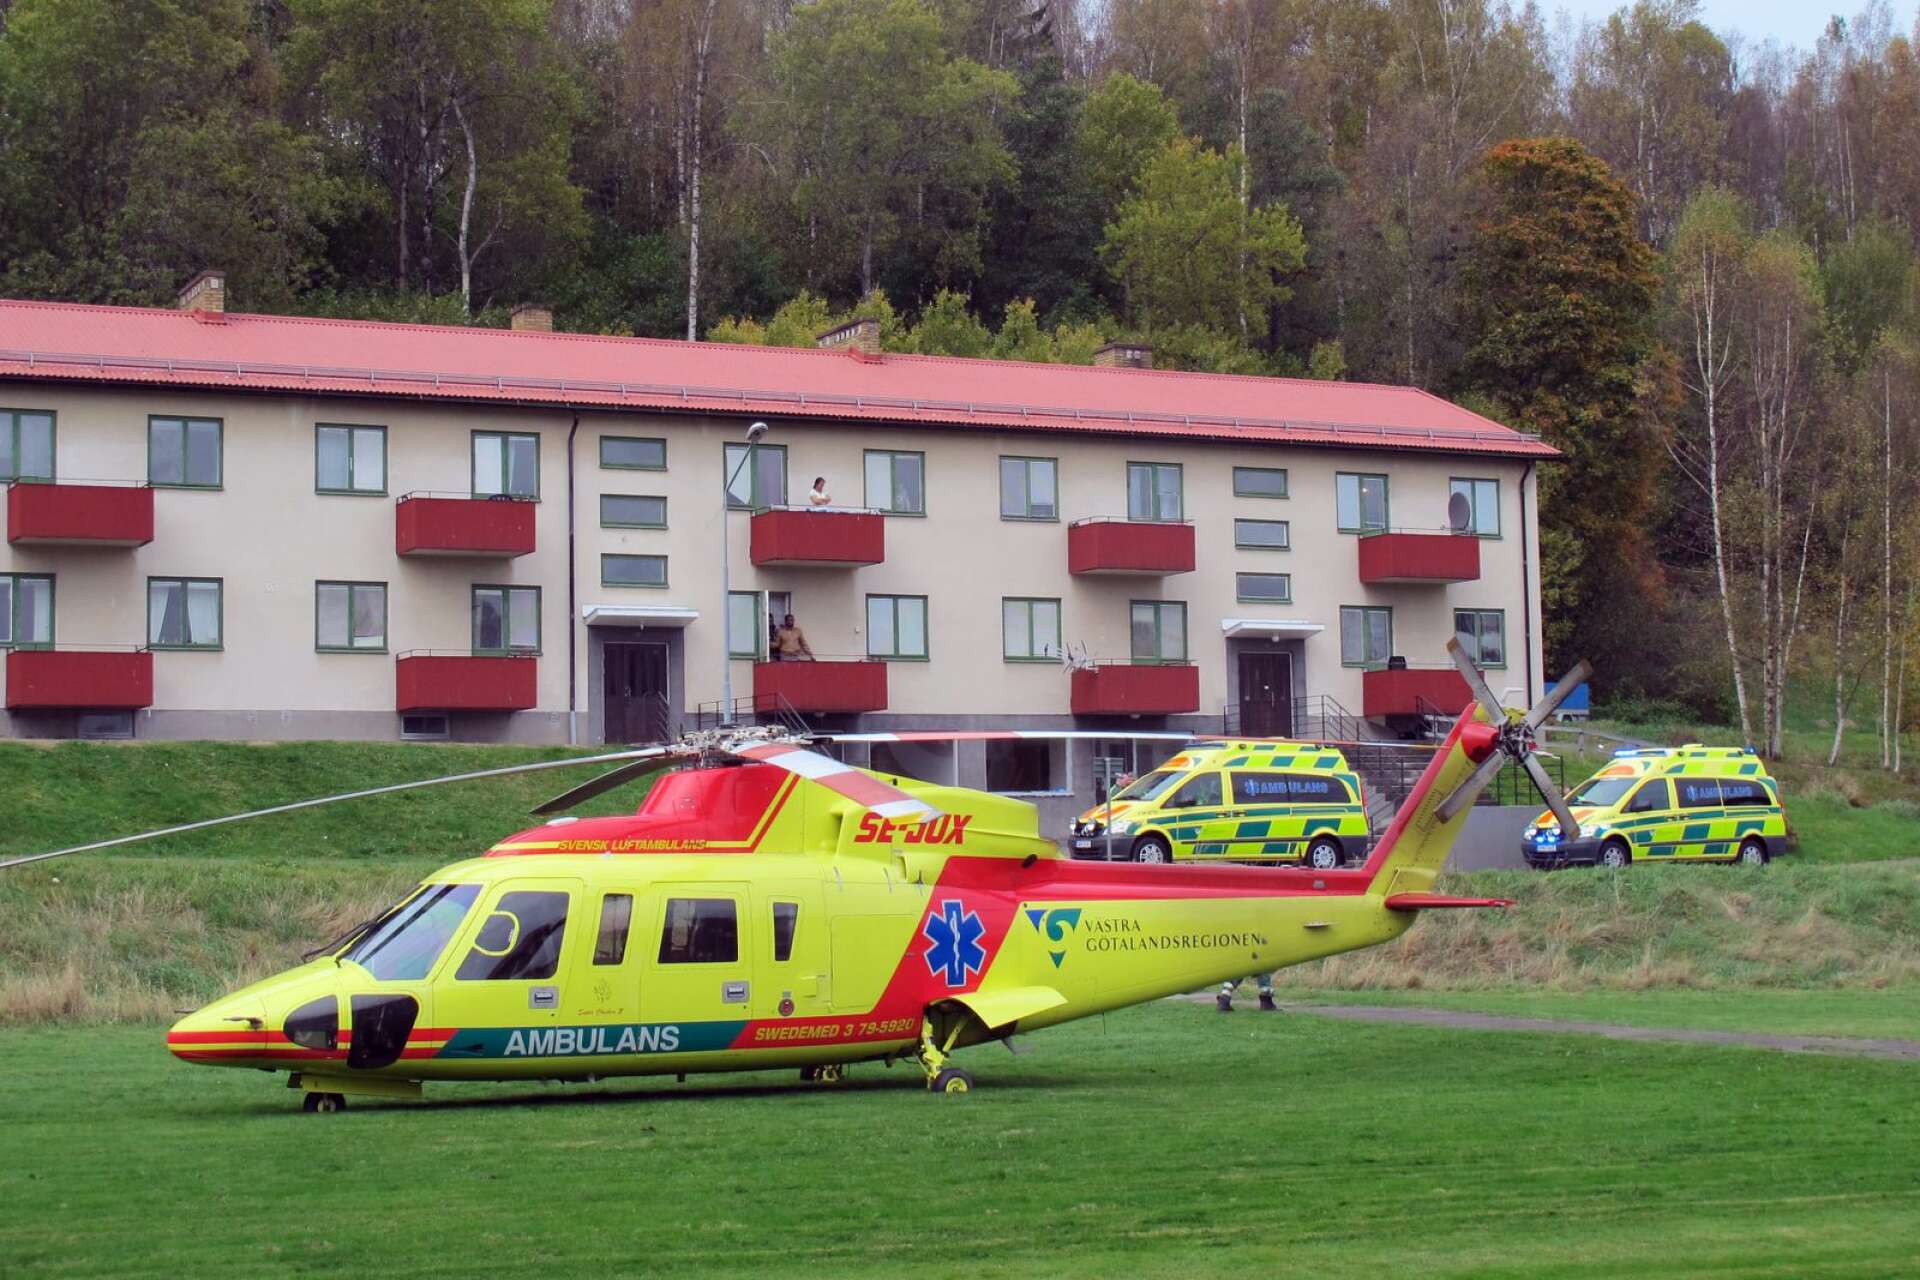  Ambulanshelikopter och ambulanser vid sjukinsats vid Långholmen i Bengtsfors för några år sedan. På helikopterplattan vid sjukhuset får den dock inte landa.